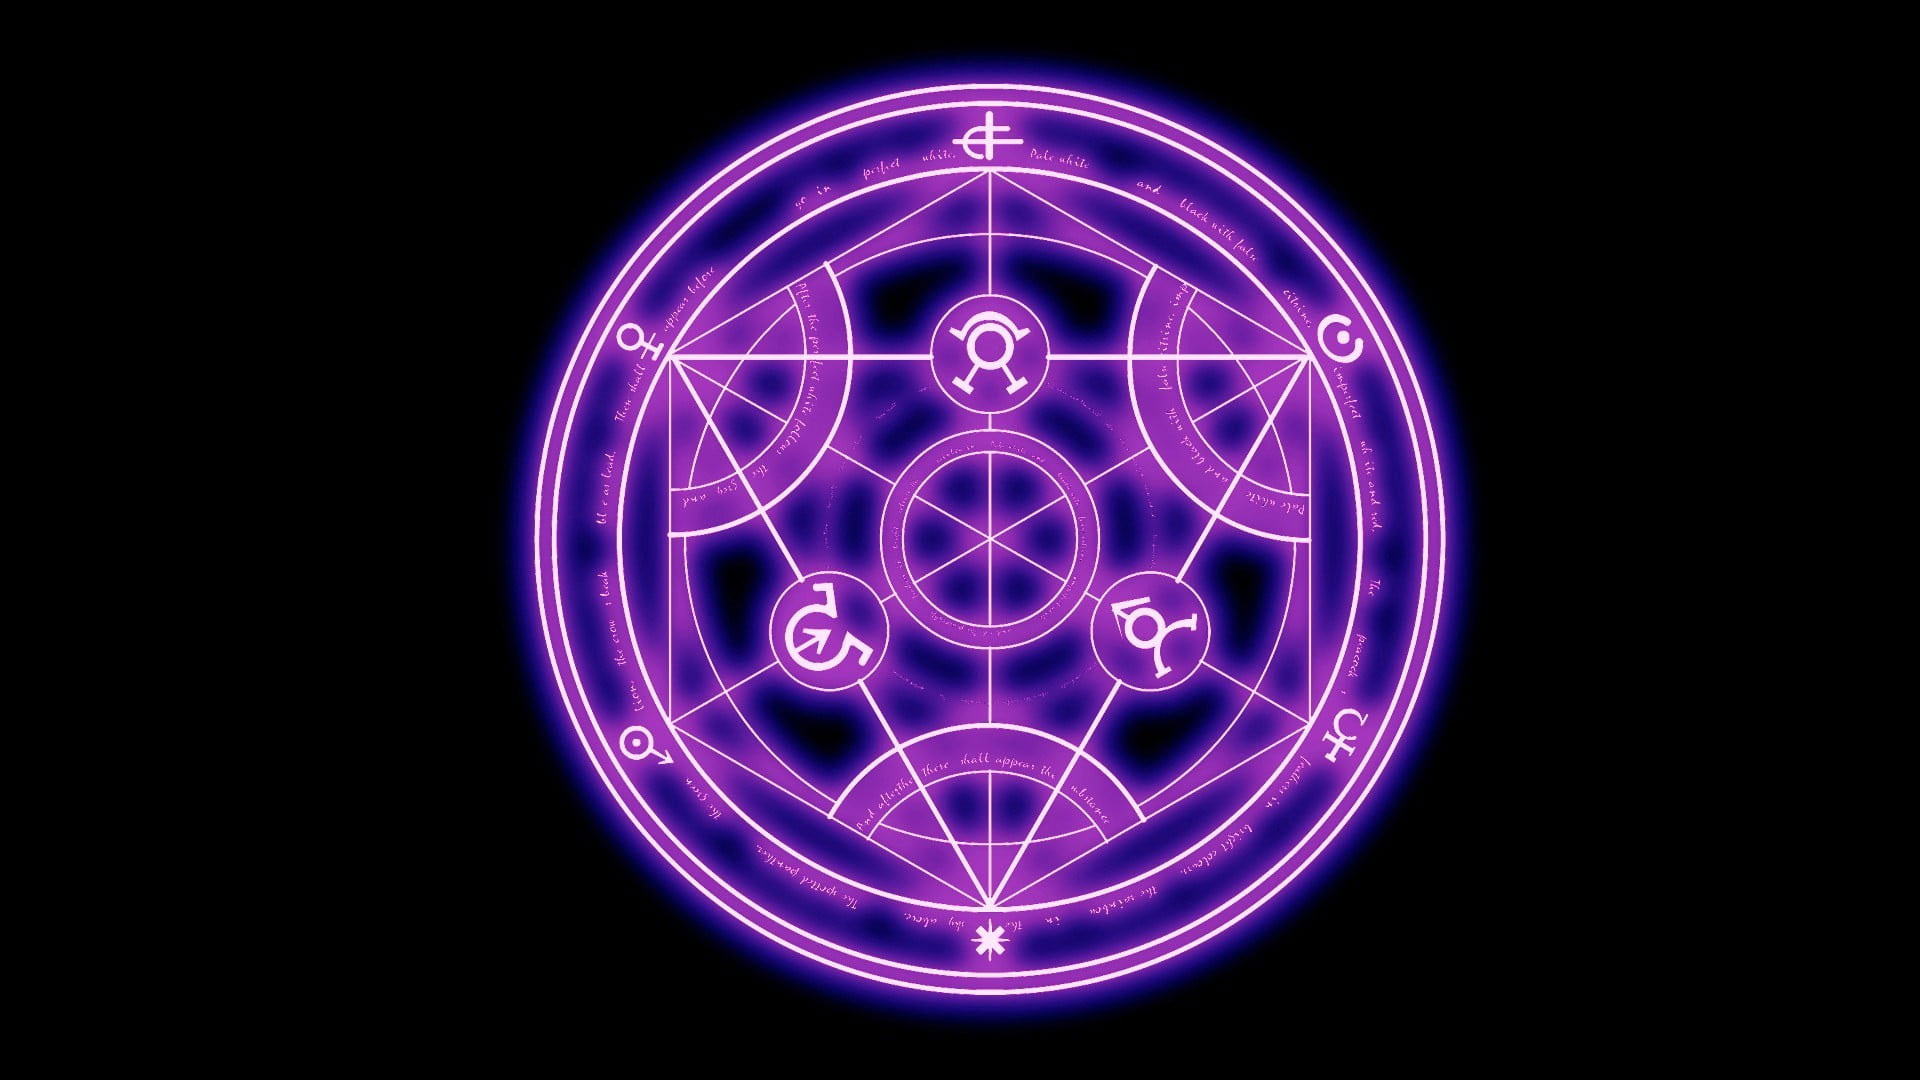 Fullmetal Alchemist pentagram wallpaper, Full Metal Alchemist